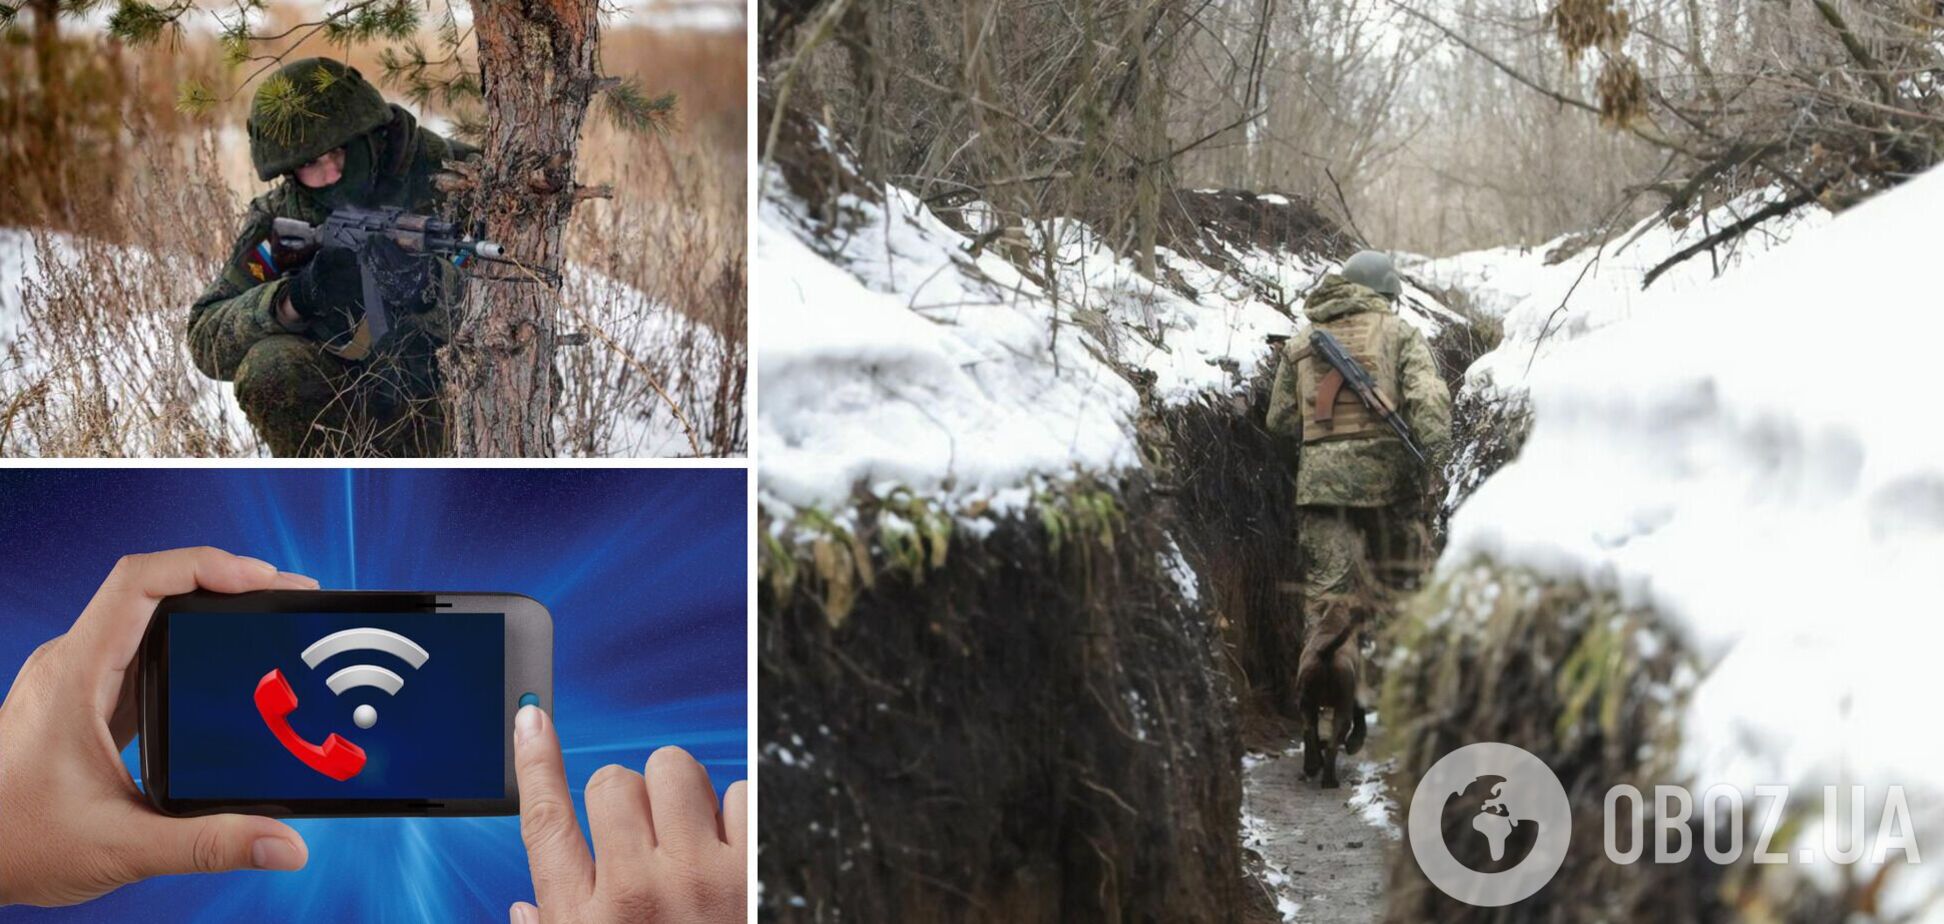 На Донбассе возникли проблемы с мобильной связью, а оккупанты угрожали наблюдателям ОБСЕ. Главное о ситуации